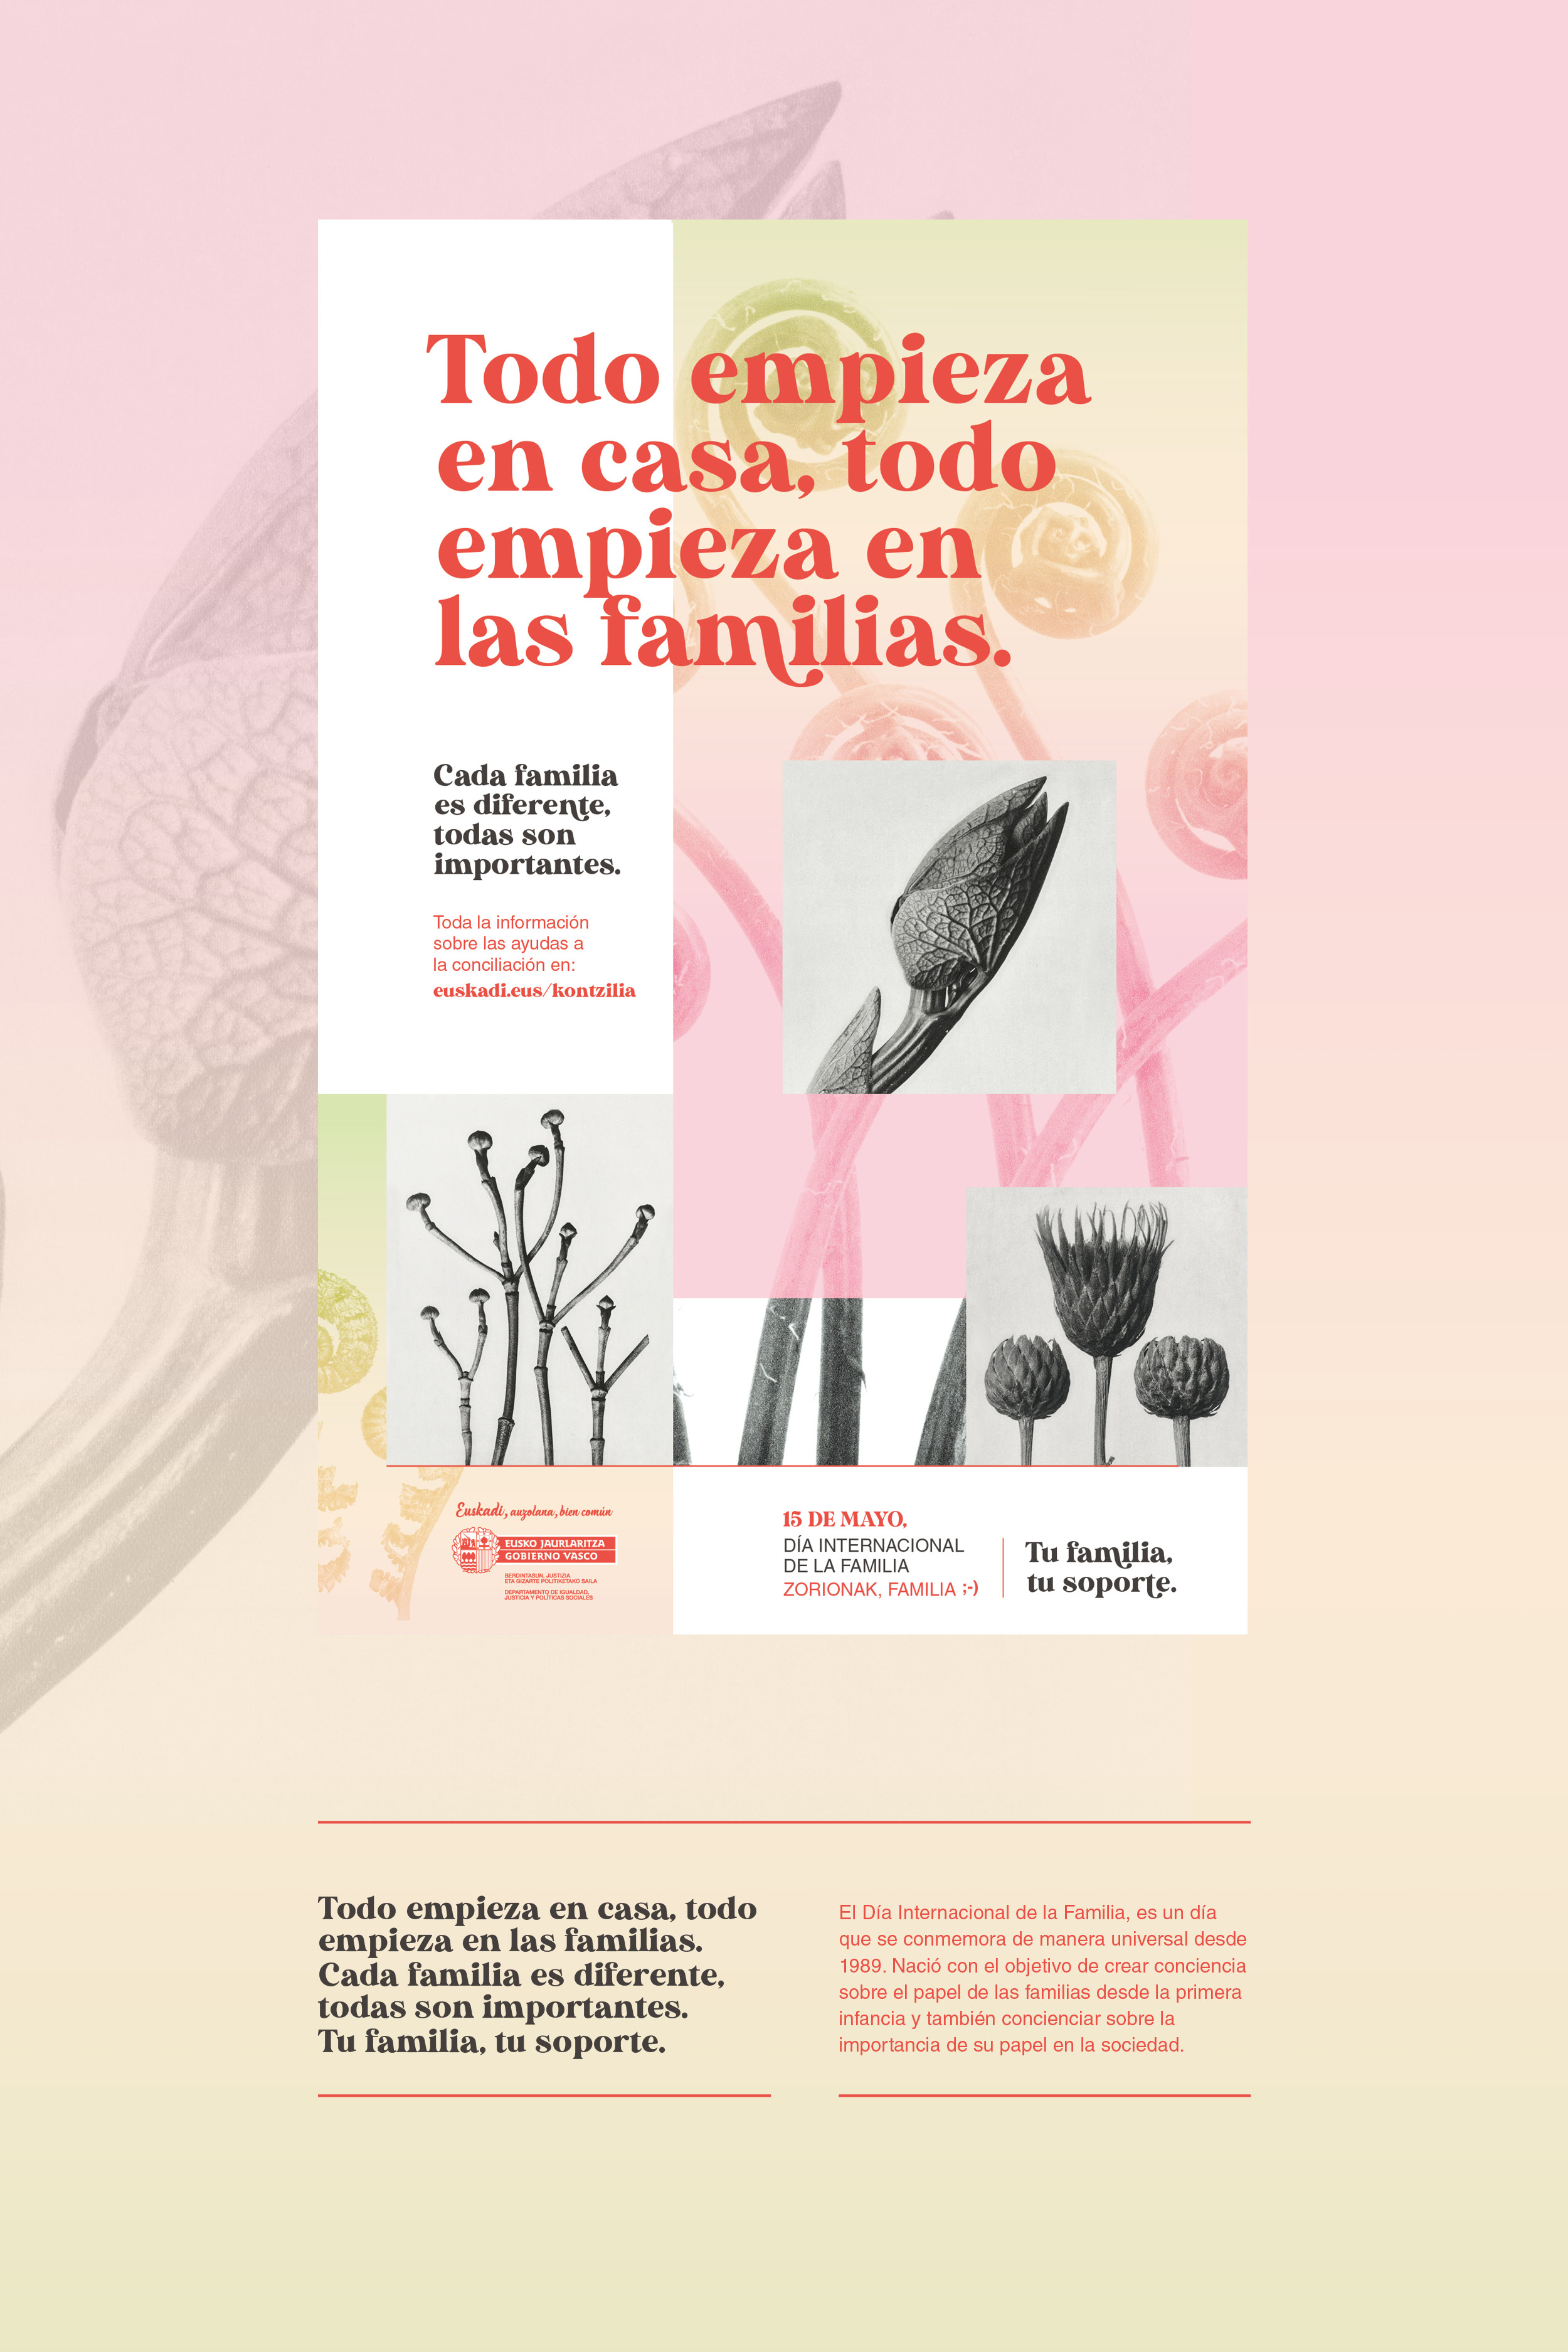 CAMPAÑA DE PUBLICIDAD “DIA INTERNACIONAL DE LAS FAMILIAS” by Ibone Txertudi - Creative Work